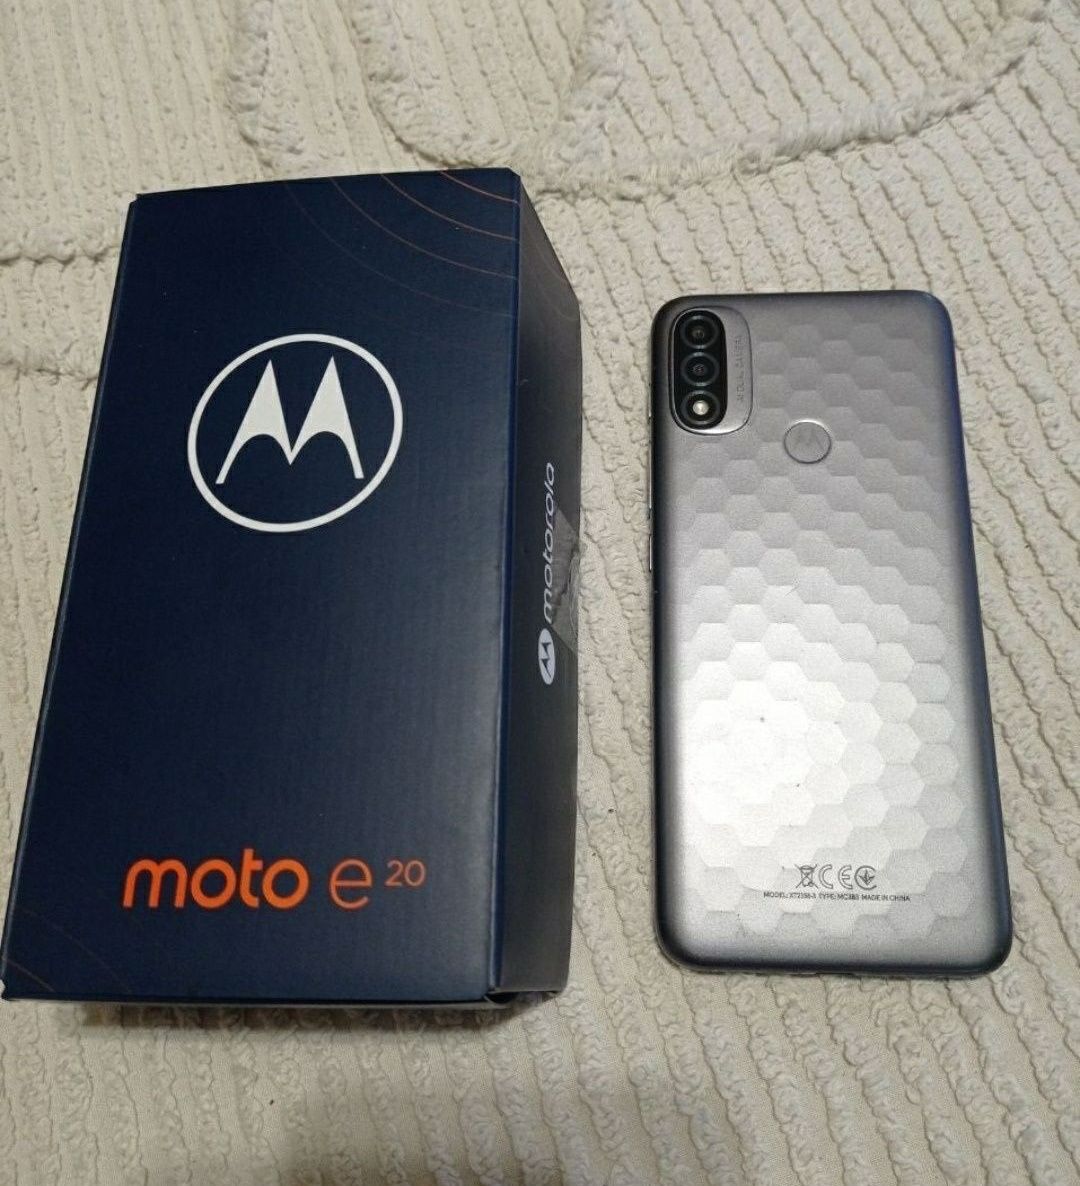 смартфон Moto E20+ подарок.(обмен на планшет)